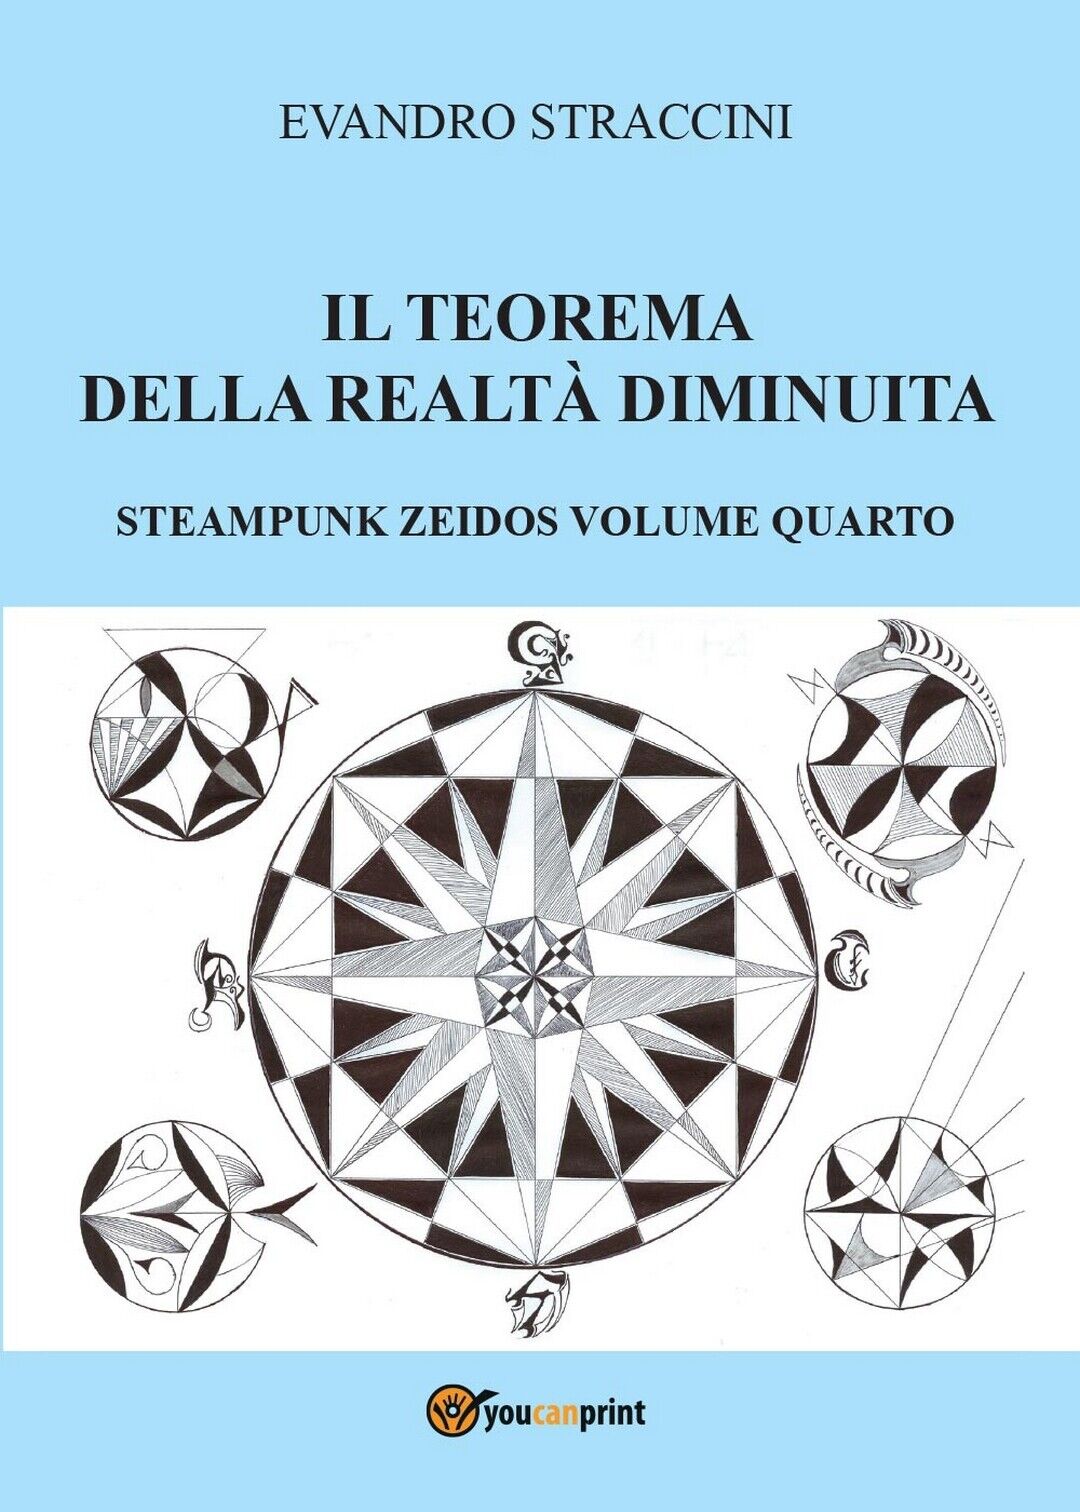 Il Teorema della Realt? Diminuita - Steampunk Zeidos volume quarto (Straccini) libro usato